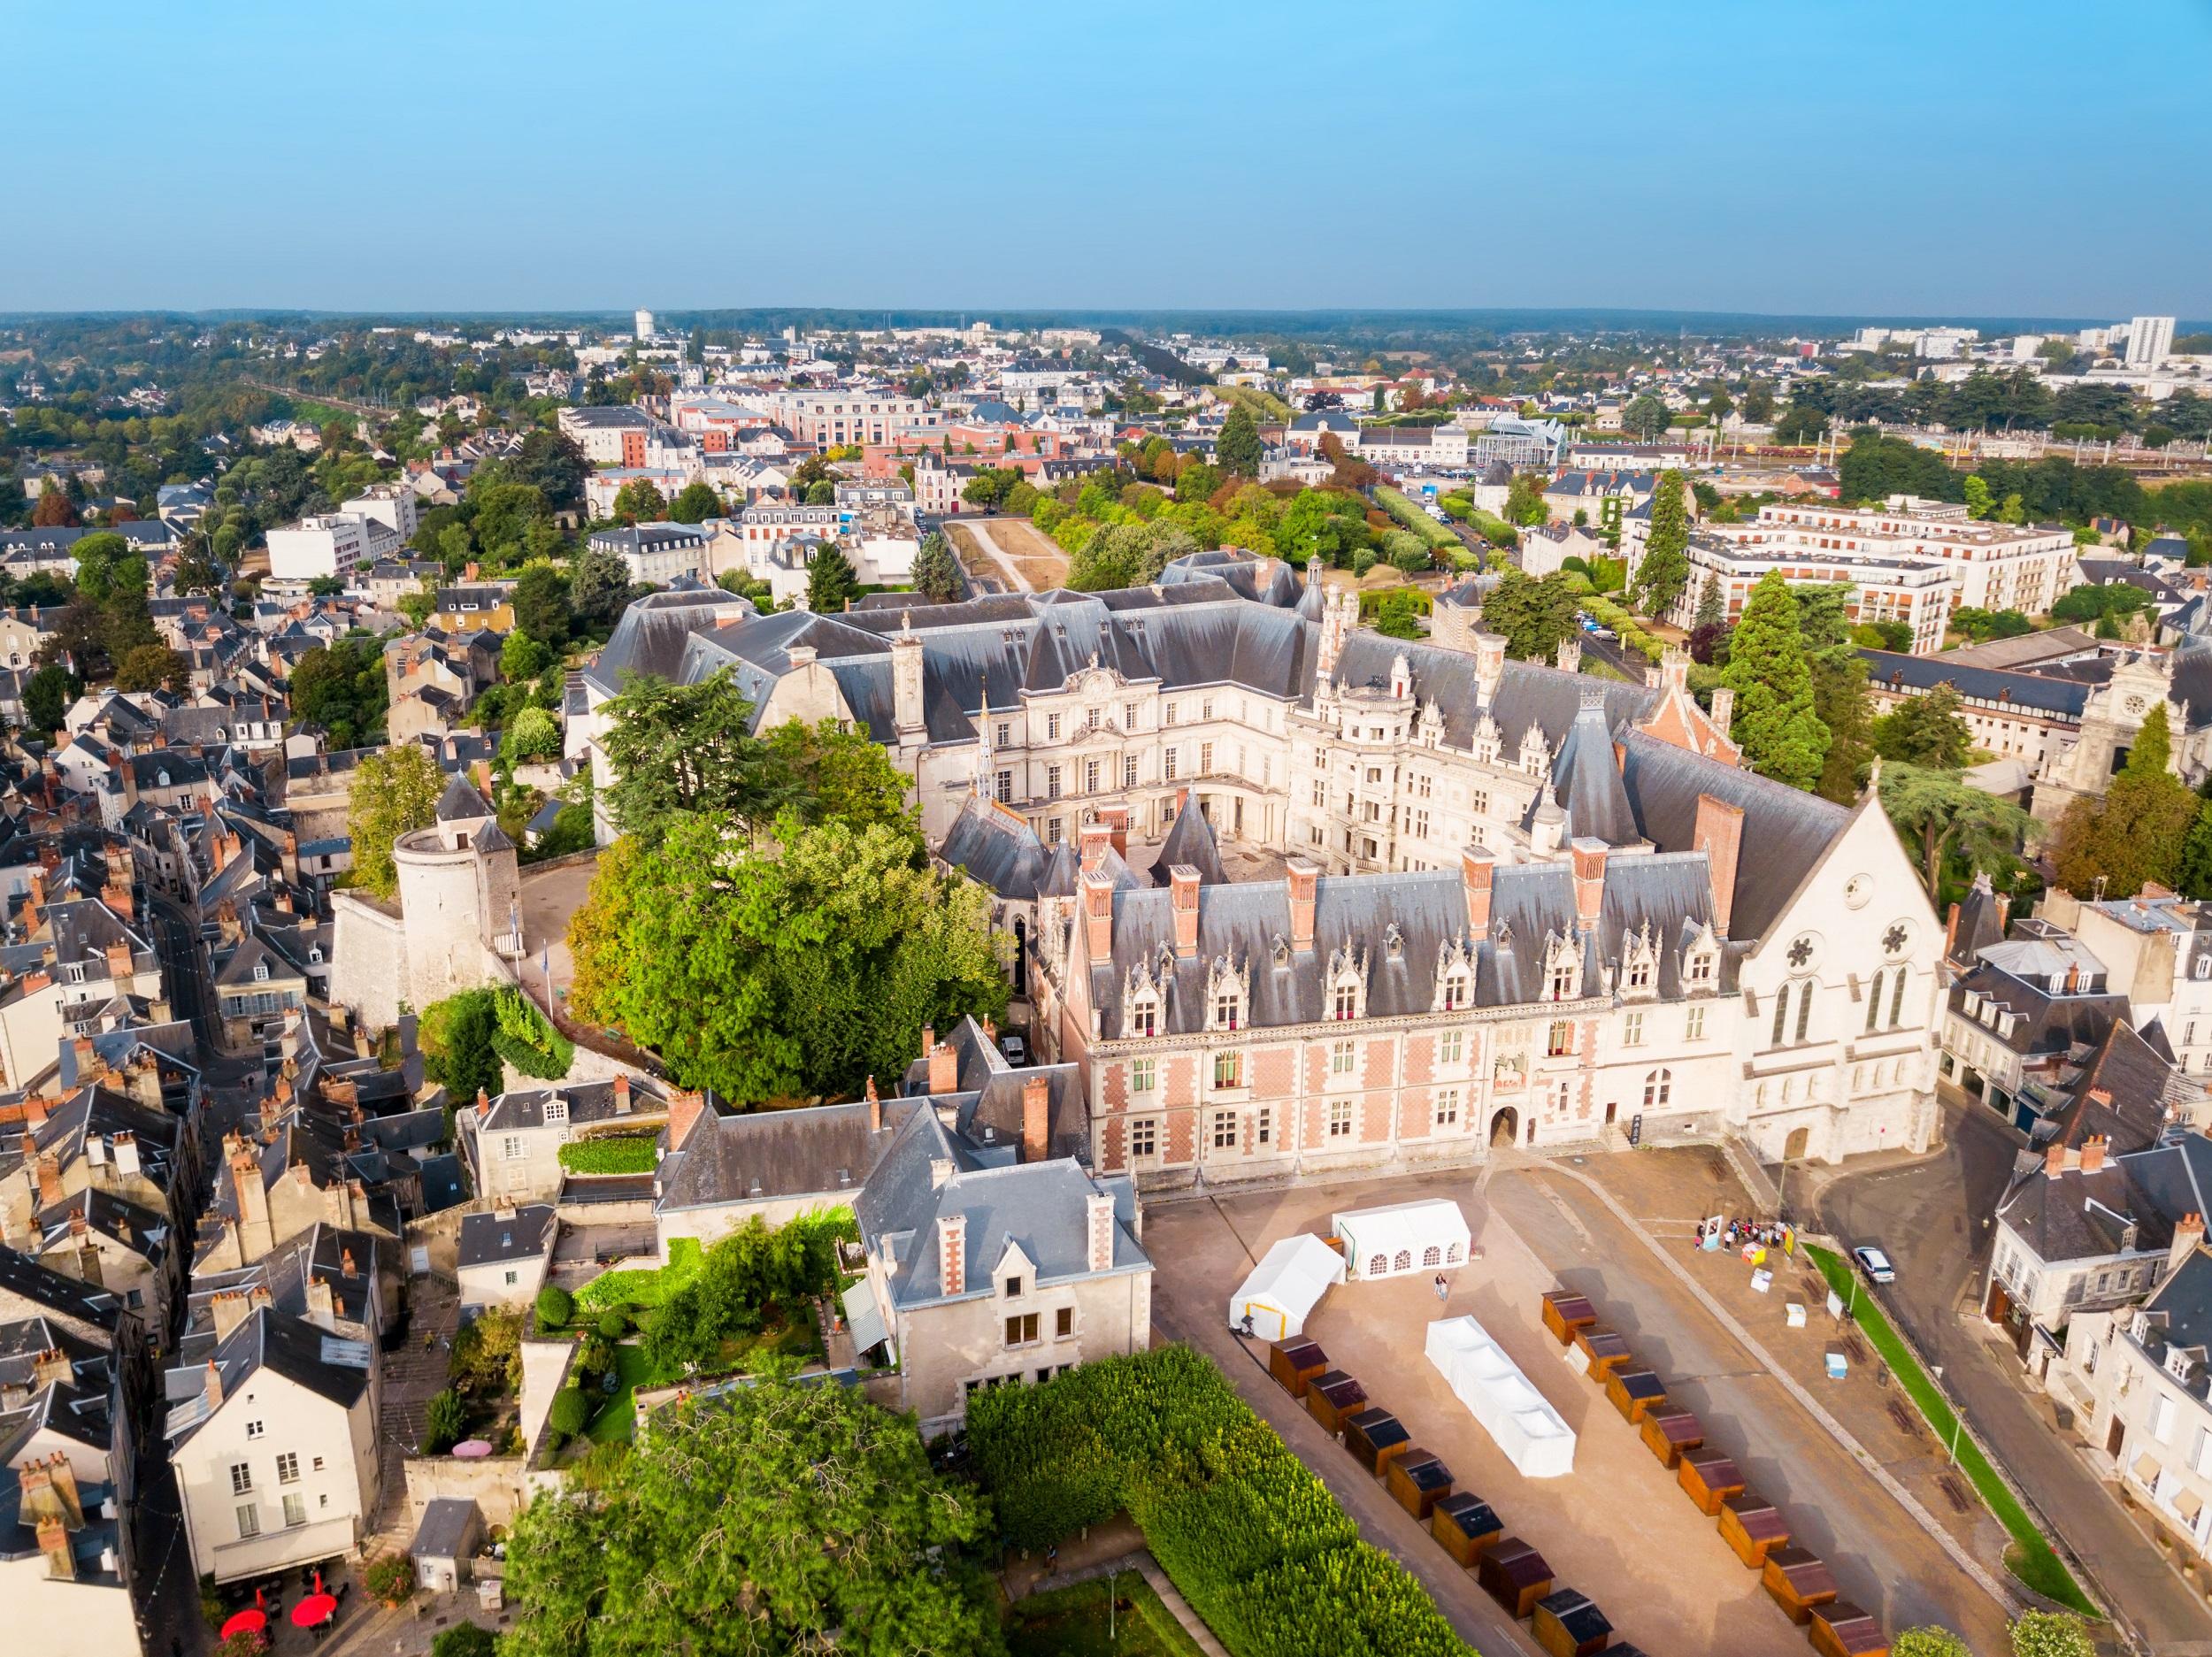 frankrijk-blois-stad-kasteel